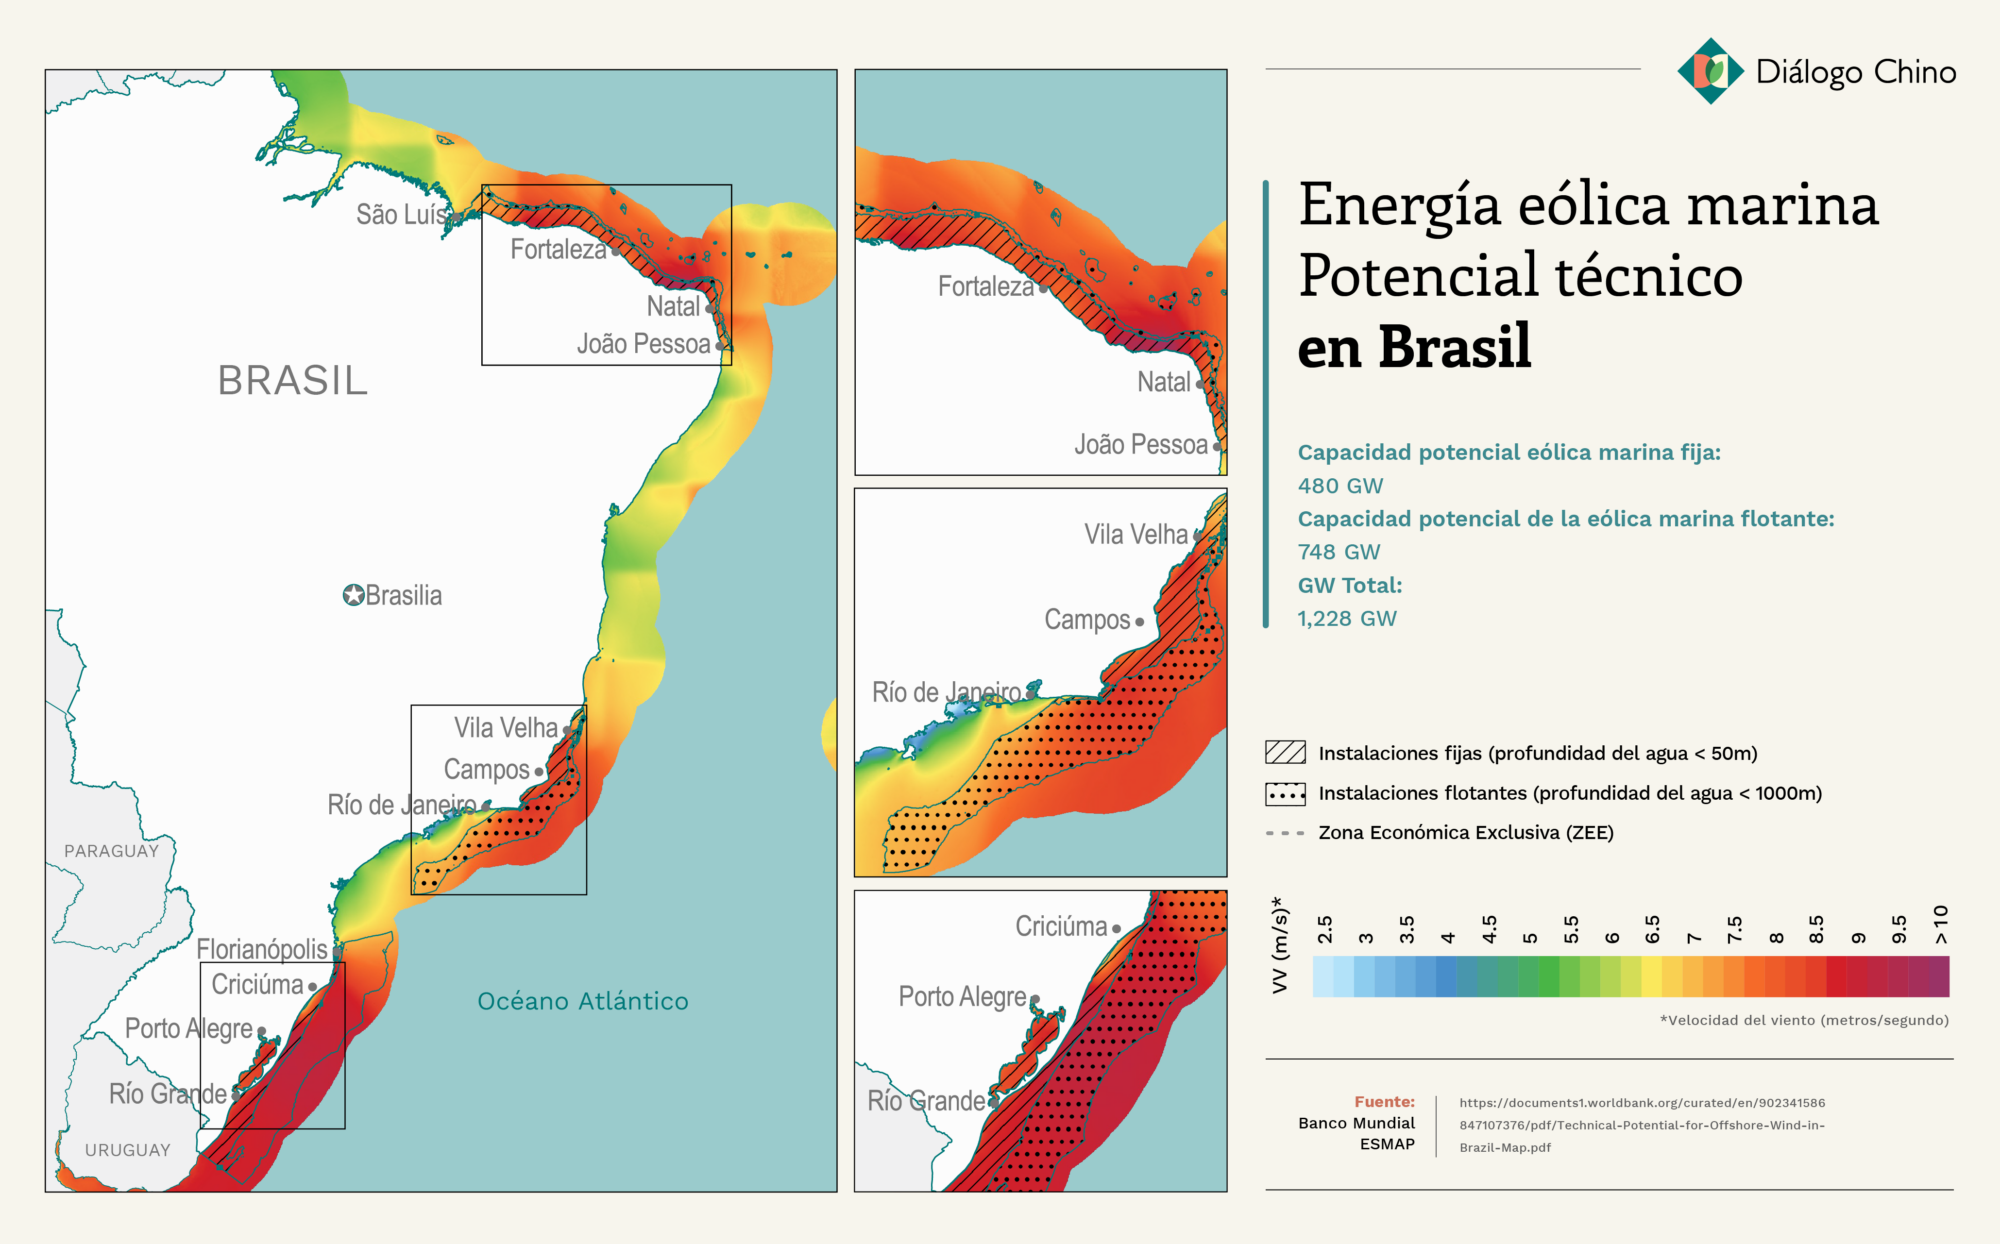 Mapa que muestra el potencial eólico marino de Brasil